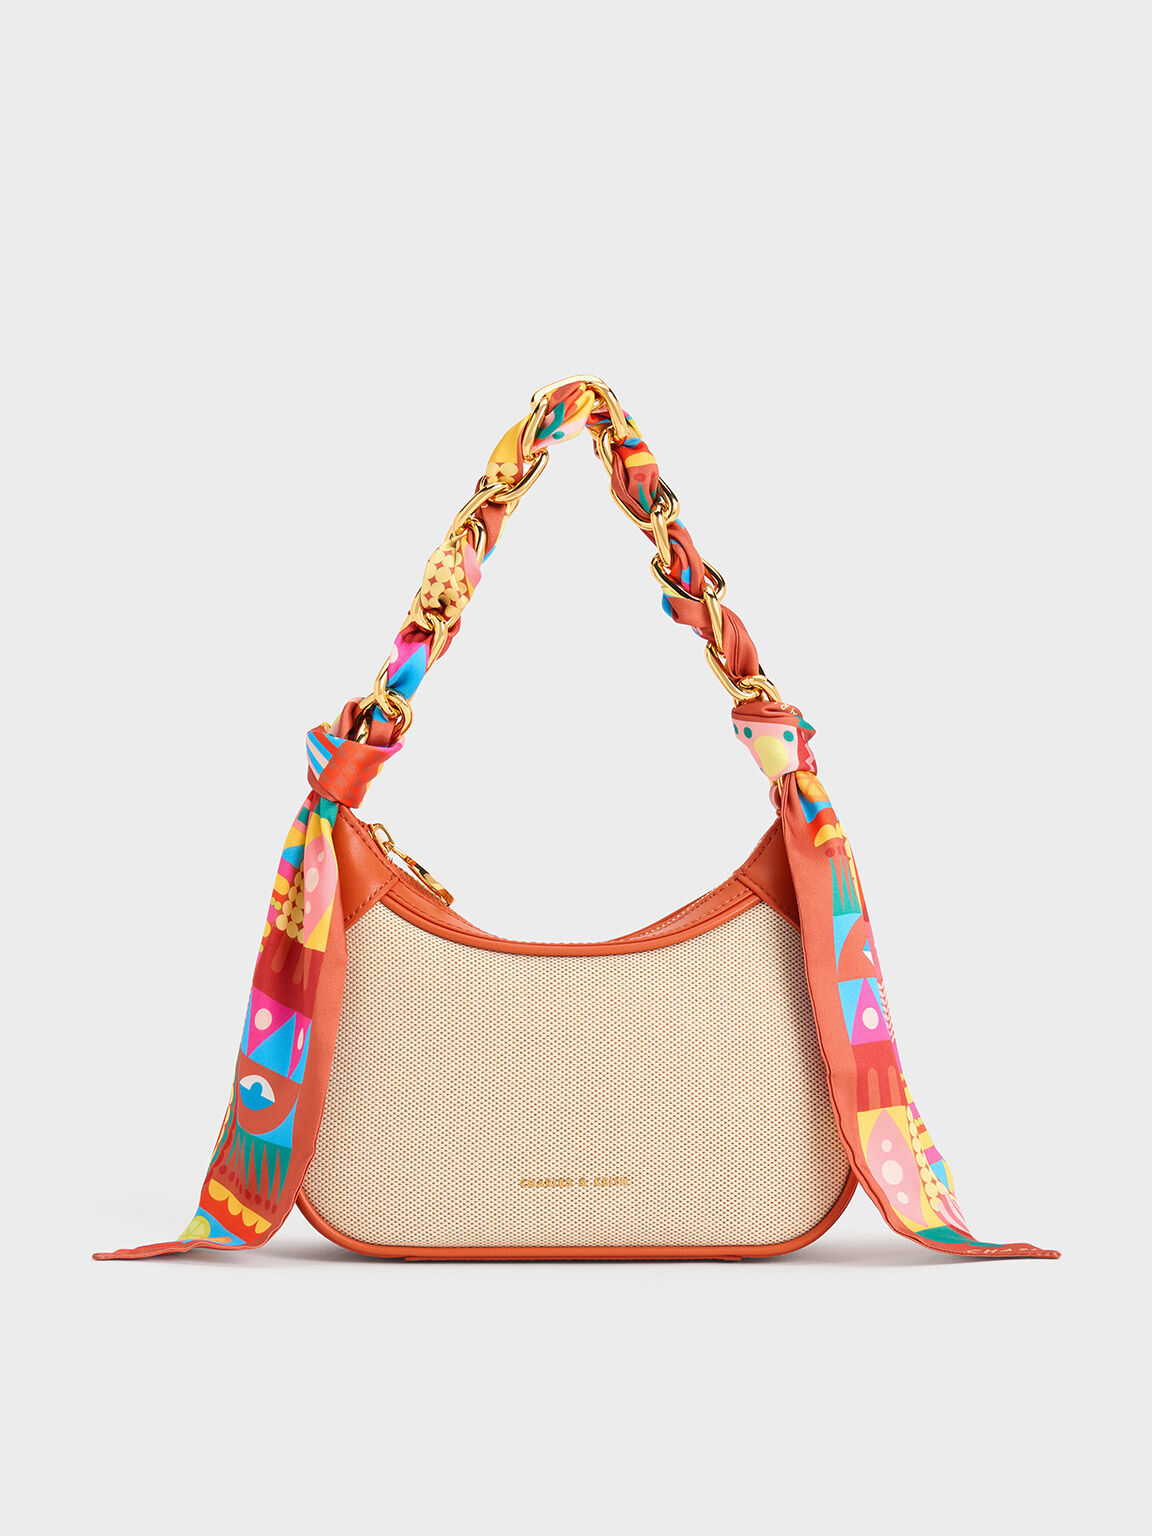 Handbags Multicolor Charles Keith Handbag, For Casual Wear